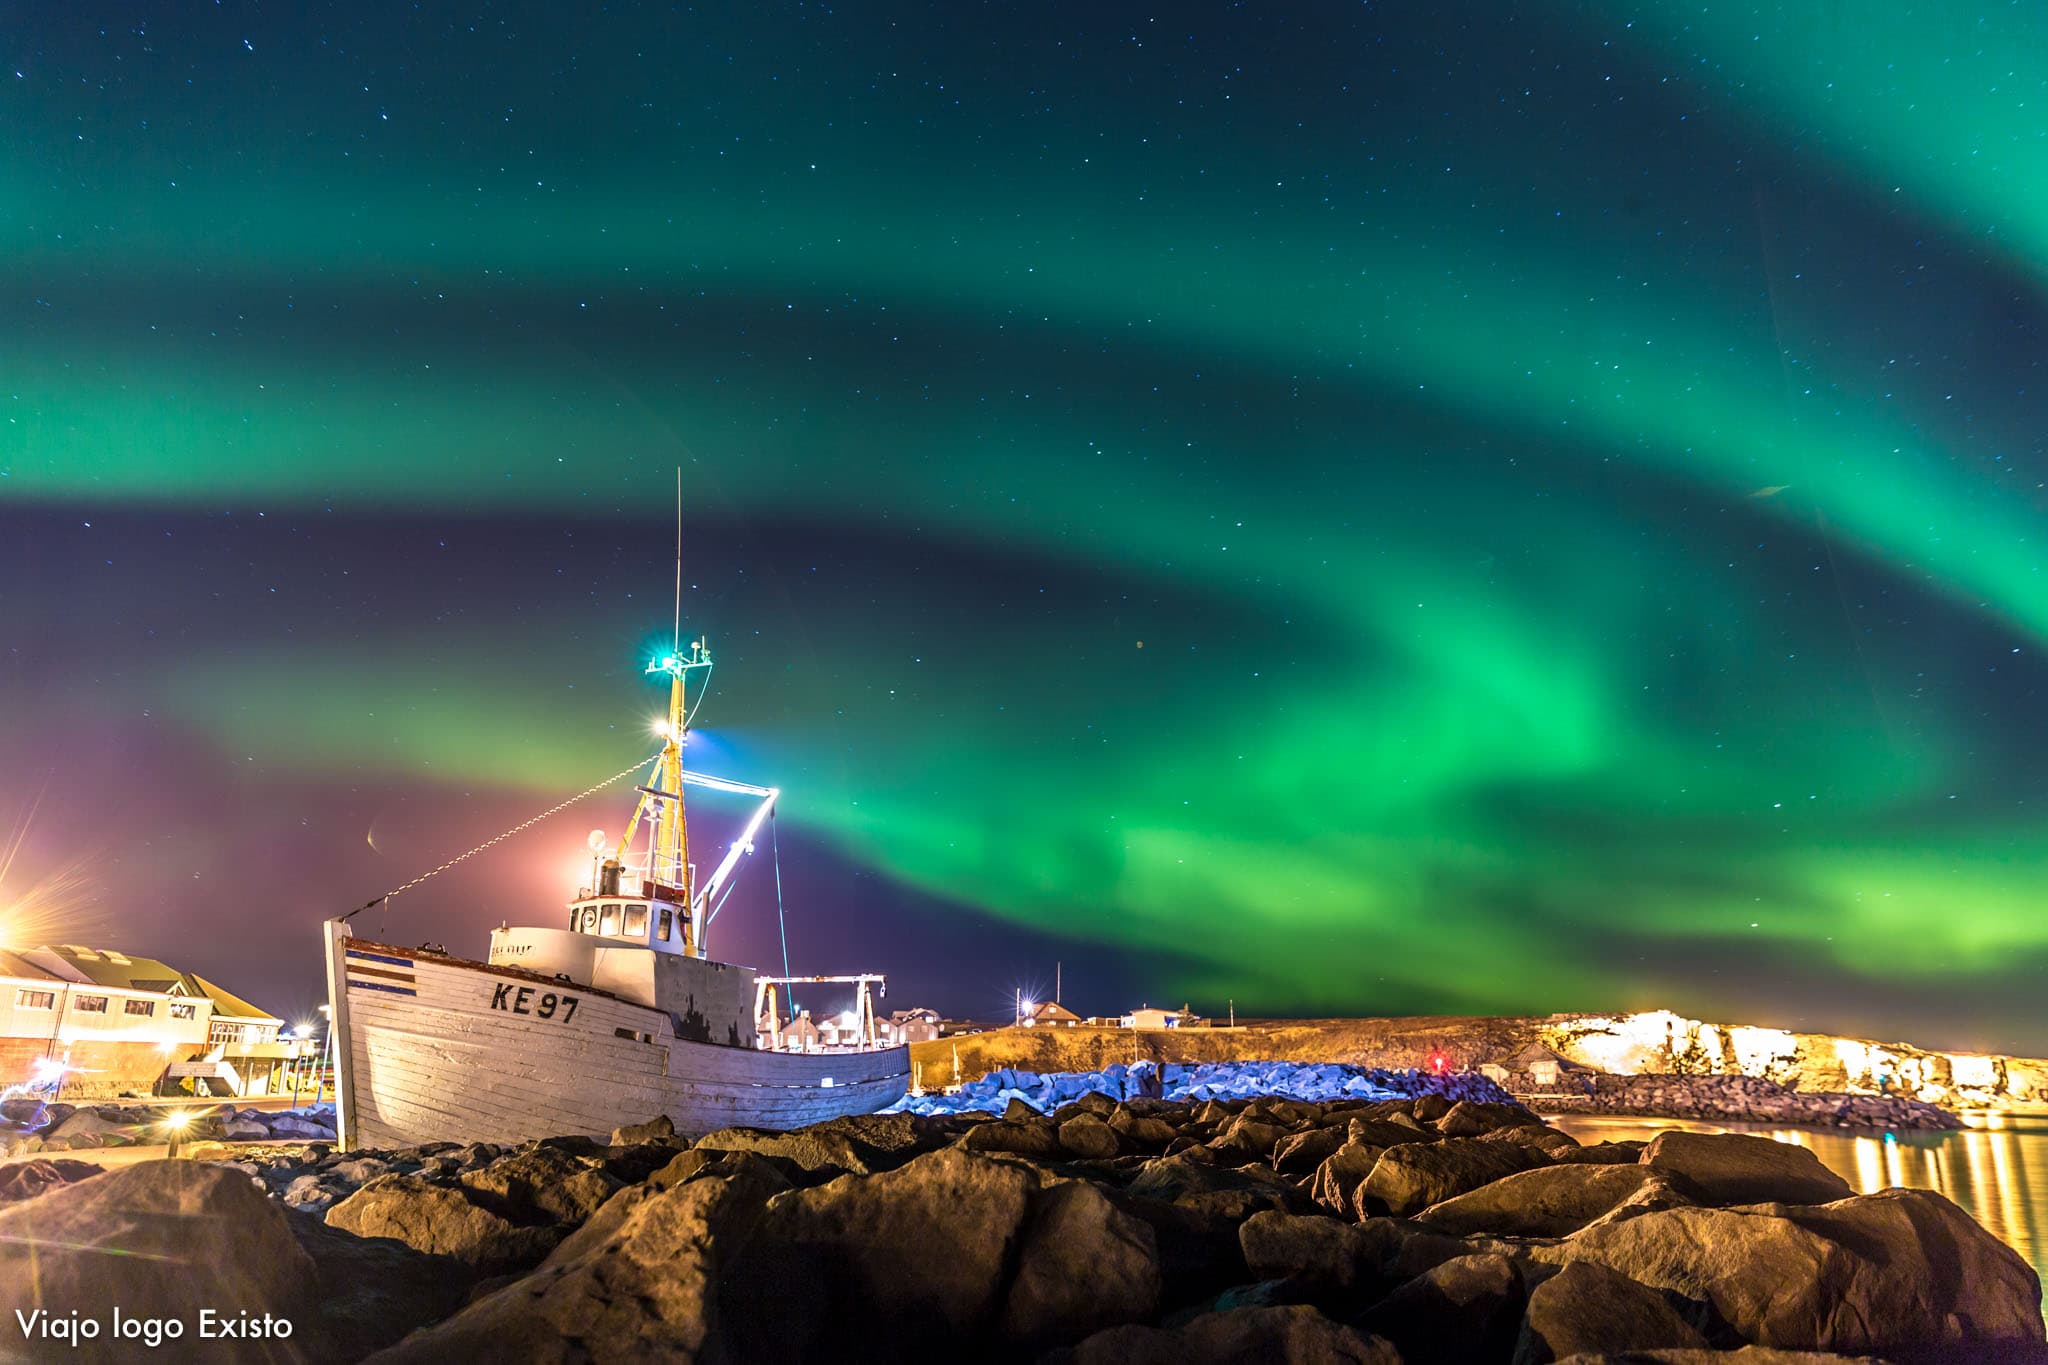 Brasileiro registra aurora boreal pulsante no céu da Islândia Brand-News  Brand-News